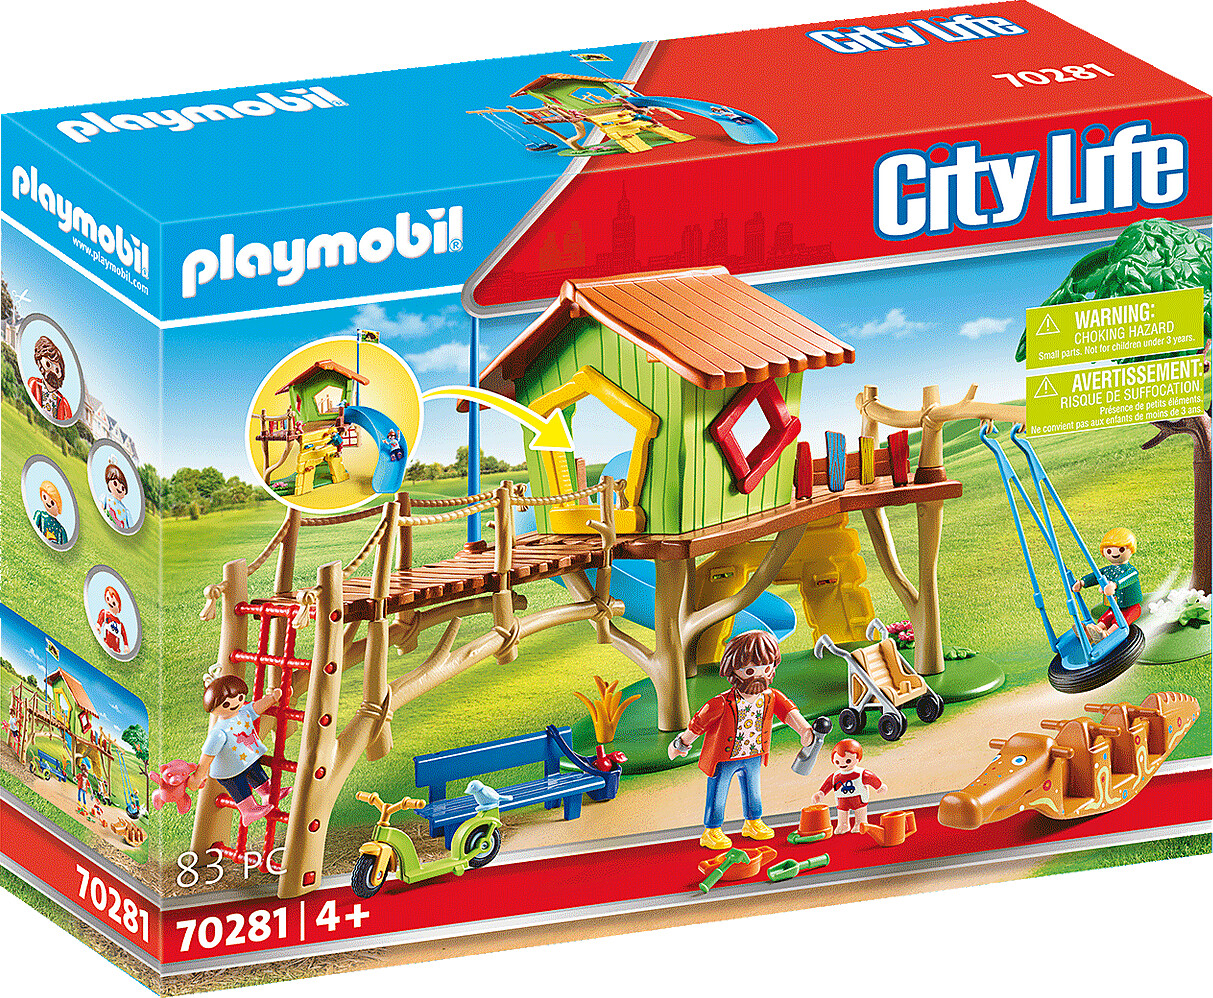 Billede af Playmobil City Life - Eventyr Legeplads - 70281